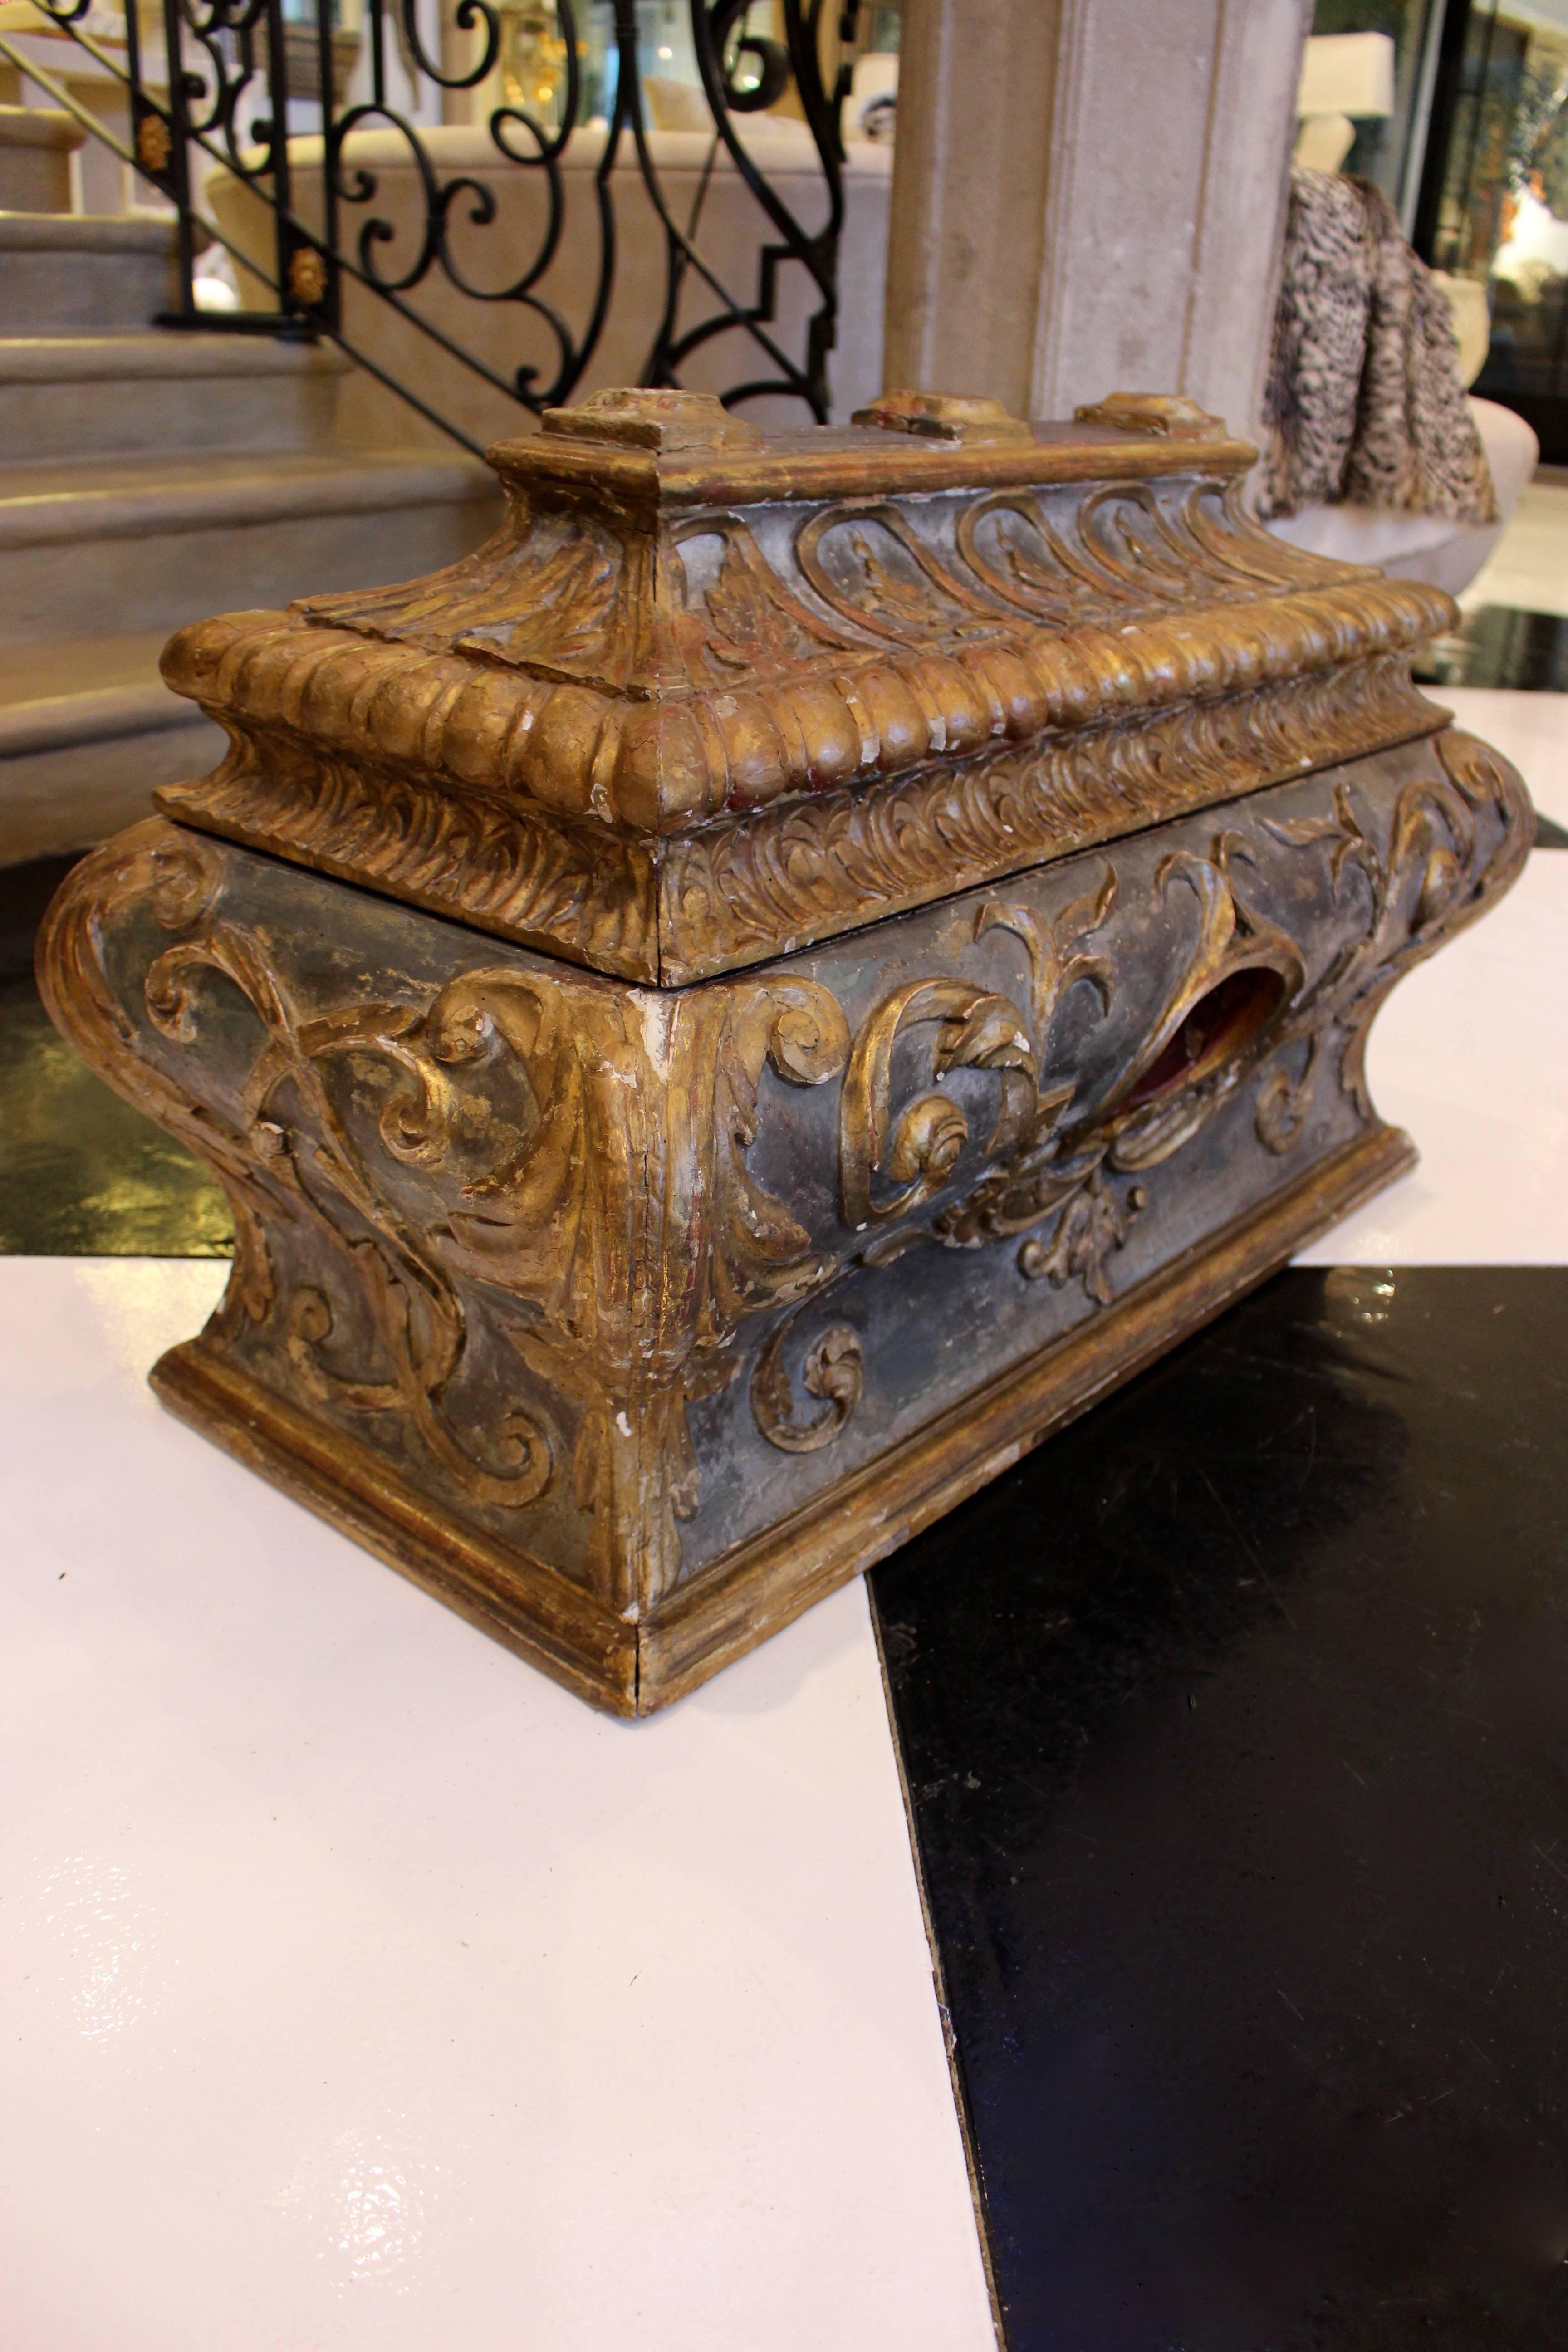 Eine italienische Rokoko-Sarkophag-Holzkommode in Bombé-Rechteckform mit reich geschnitztem, vergoldetem Dekor auf ebonisiertem, beschädigtem Grund. Der aufklappbare Pagodendeckel ist kunstvoll geschnitzt mit einem Fries aus Urnen in Bögen über